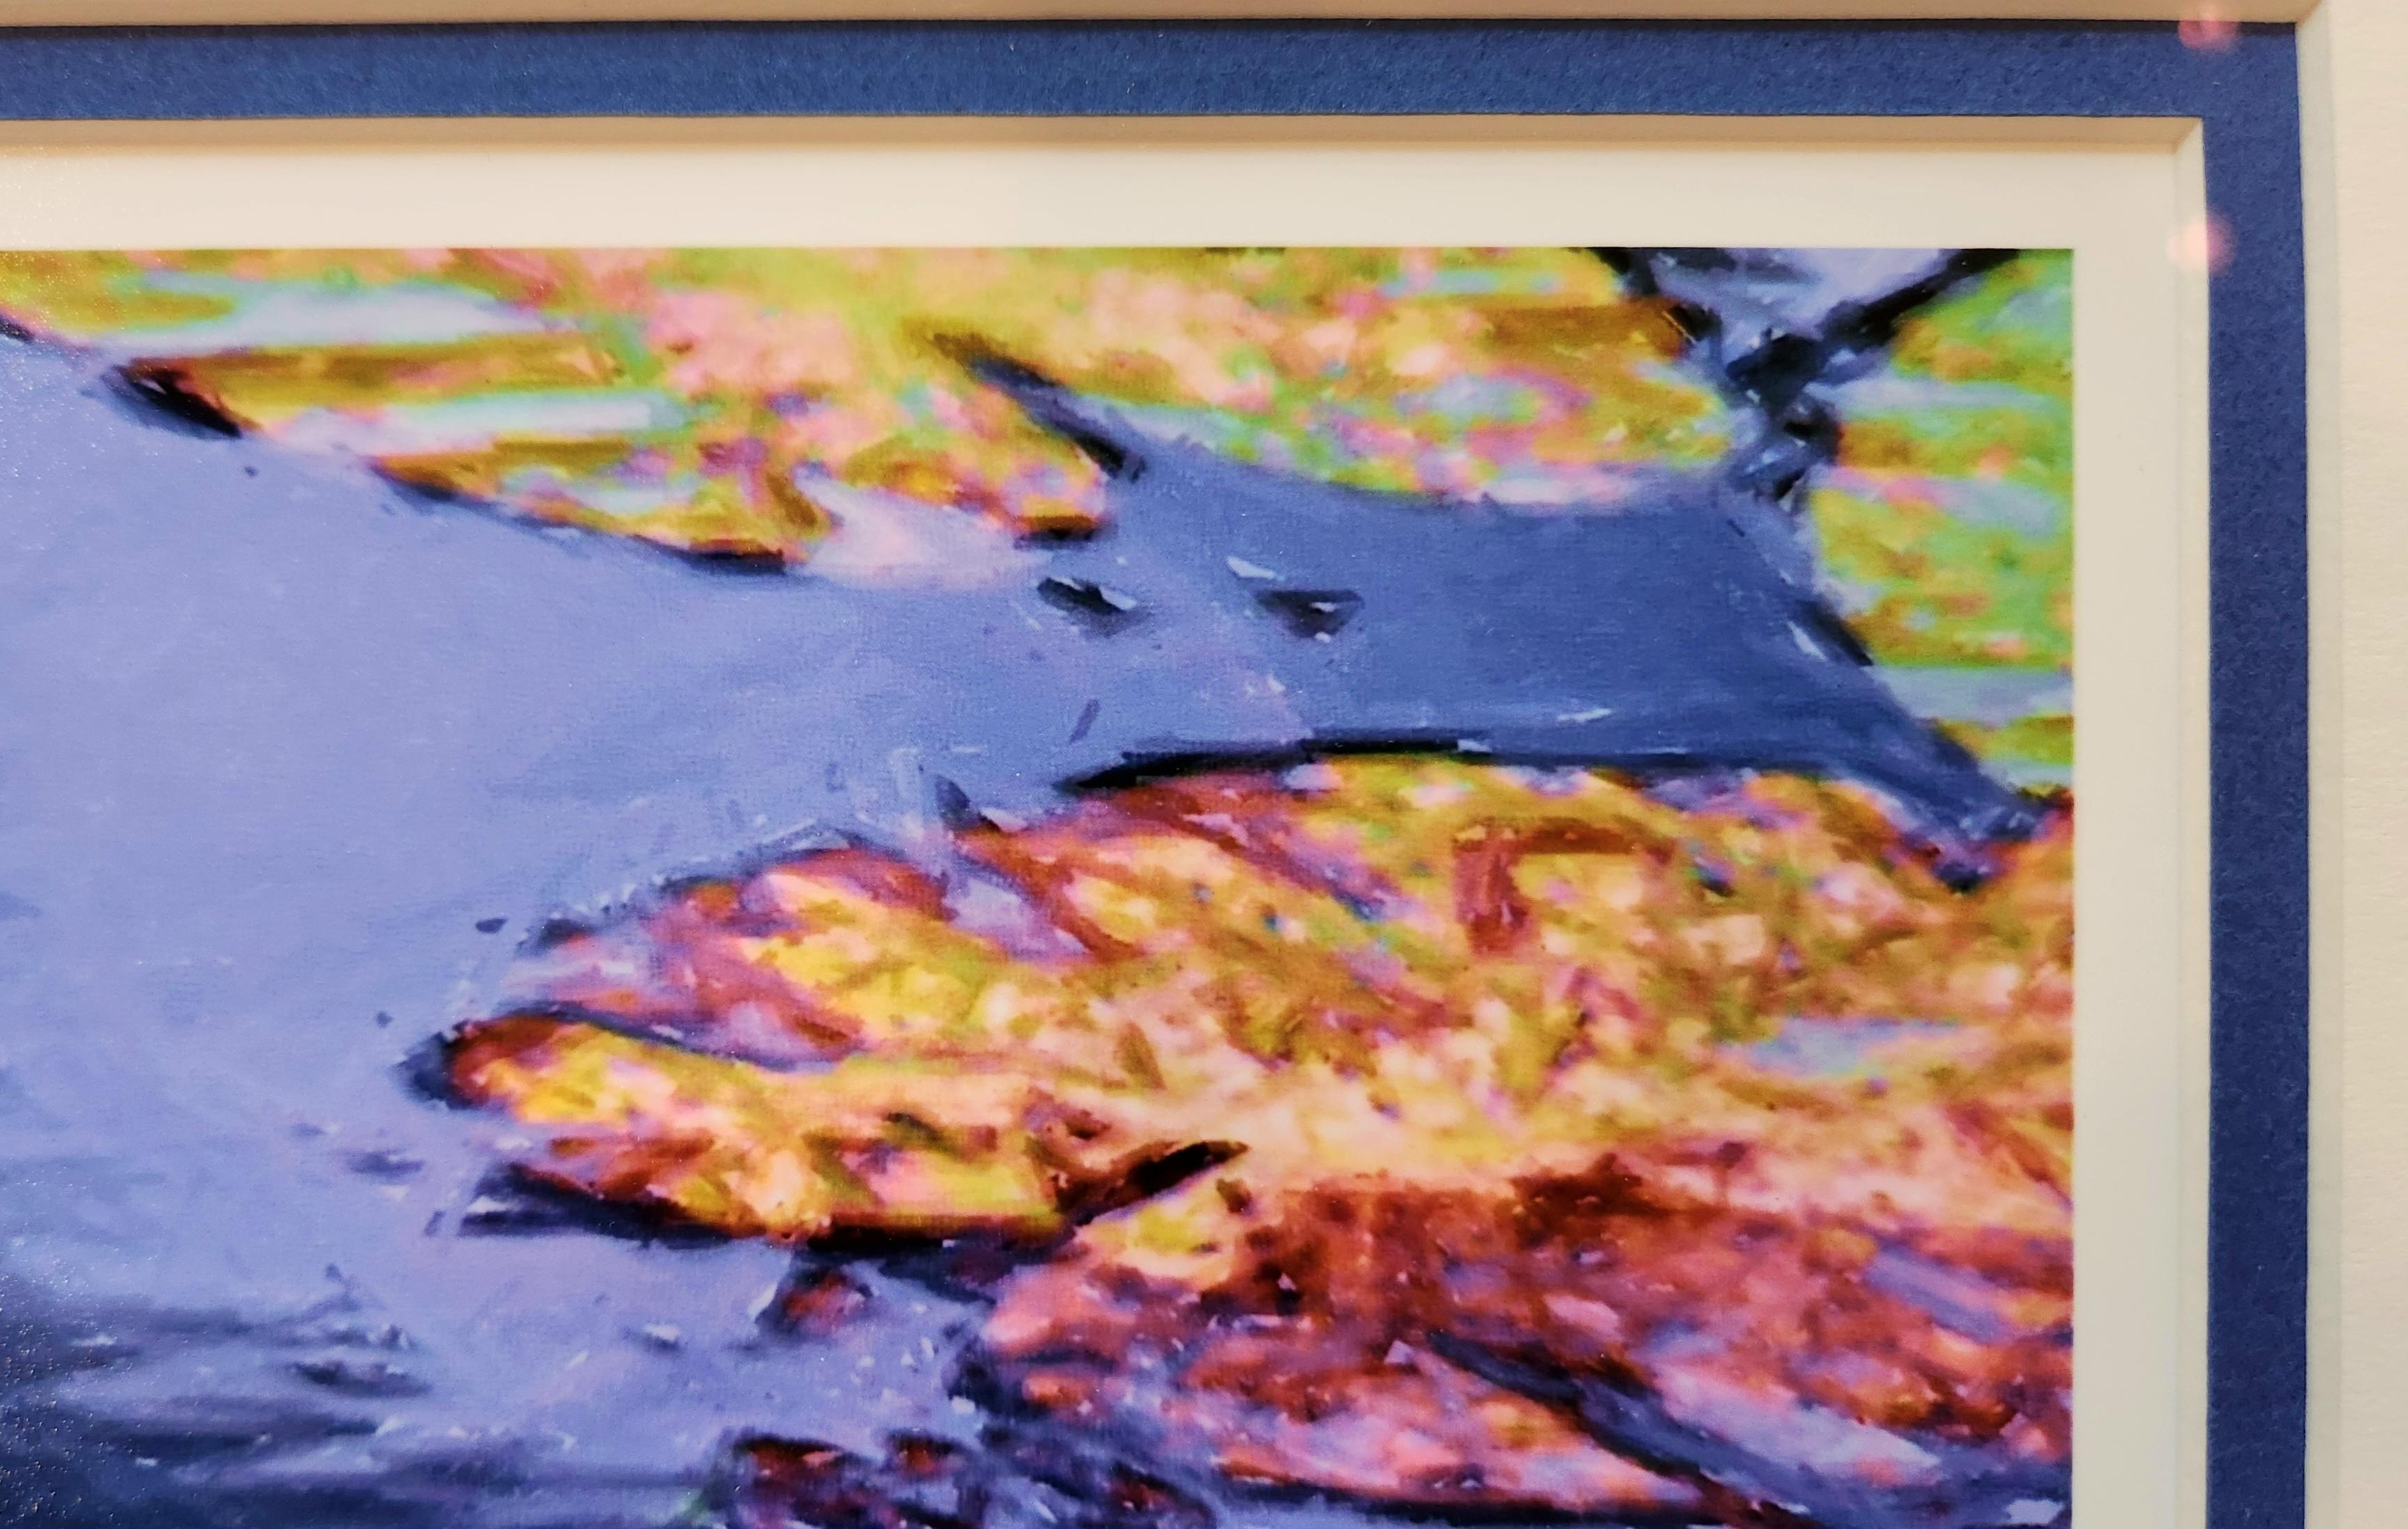 Diese Landschaft eines Seerosenblattes zeigt ein paar Blätter und eine schöne gelbe Lilie in der Mitte des Bildes. Im Vordergrund ist ein großes grünes Blatt zu sehen, das im Hintergrund von anderen Blättern, meist in herbstlichen Farben,